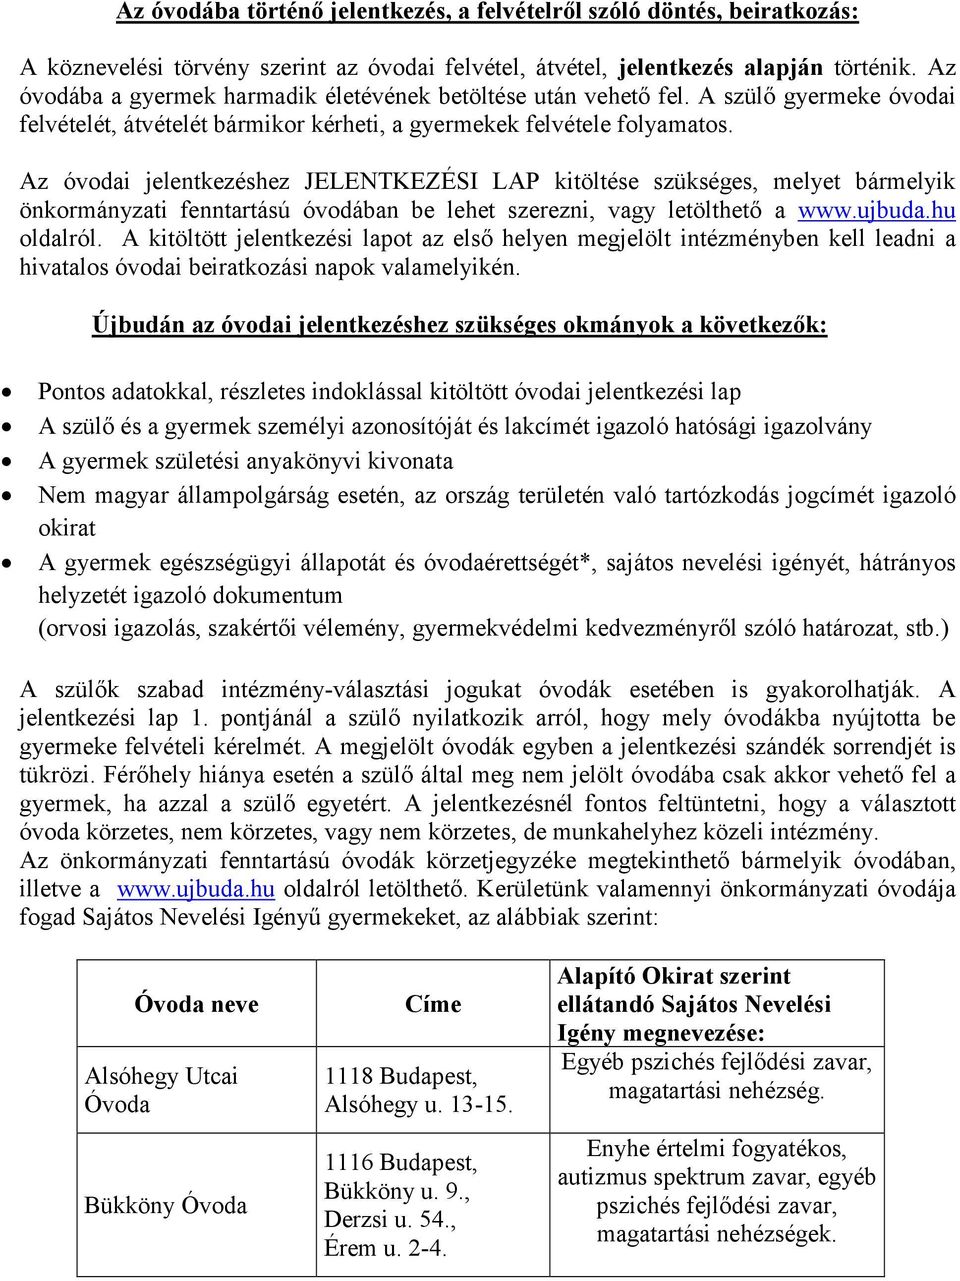 Az óvodai jelentkezéshez JELENTKEZÉSI LAP kitöltése szükséges, melyet bármelyik önkormányzati fenntartású óvodában be lehet szerezni, vagy letölthető a www.ujbuda.hu oldalról.